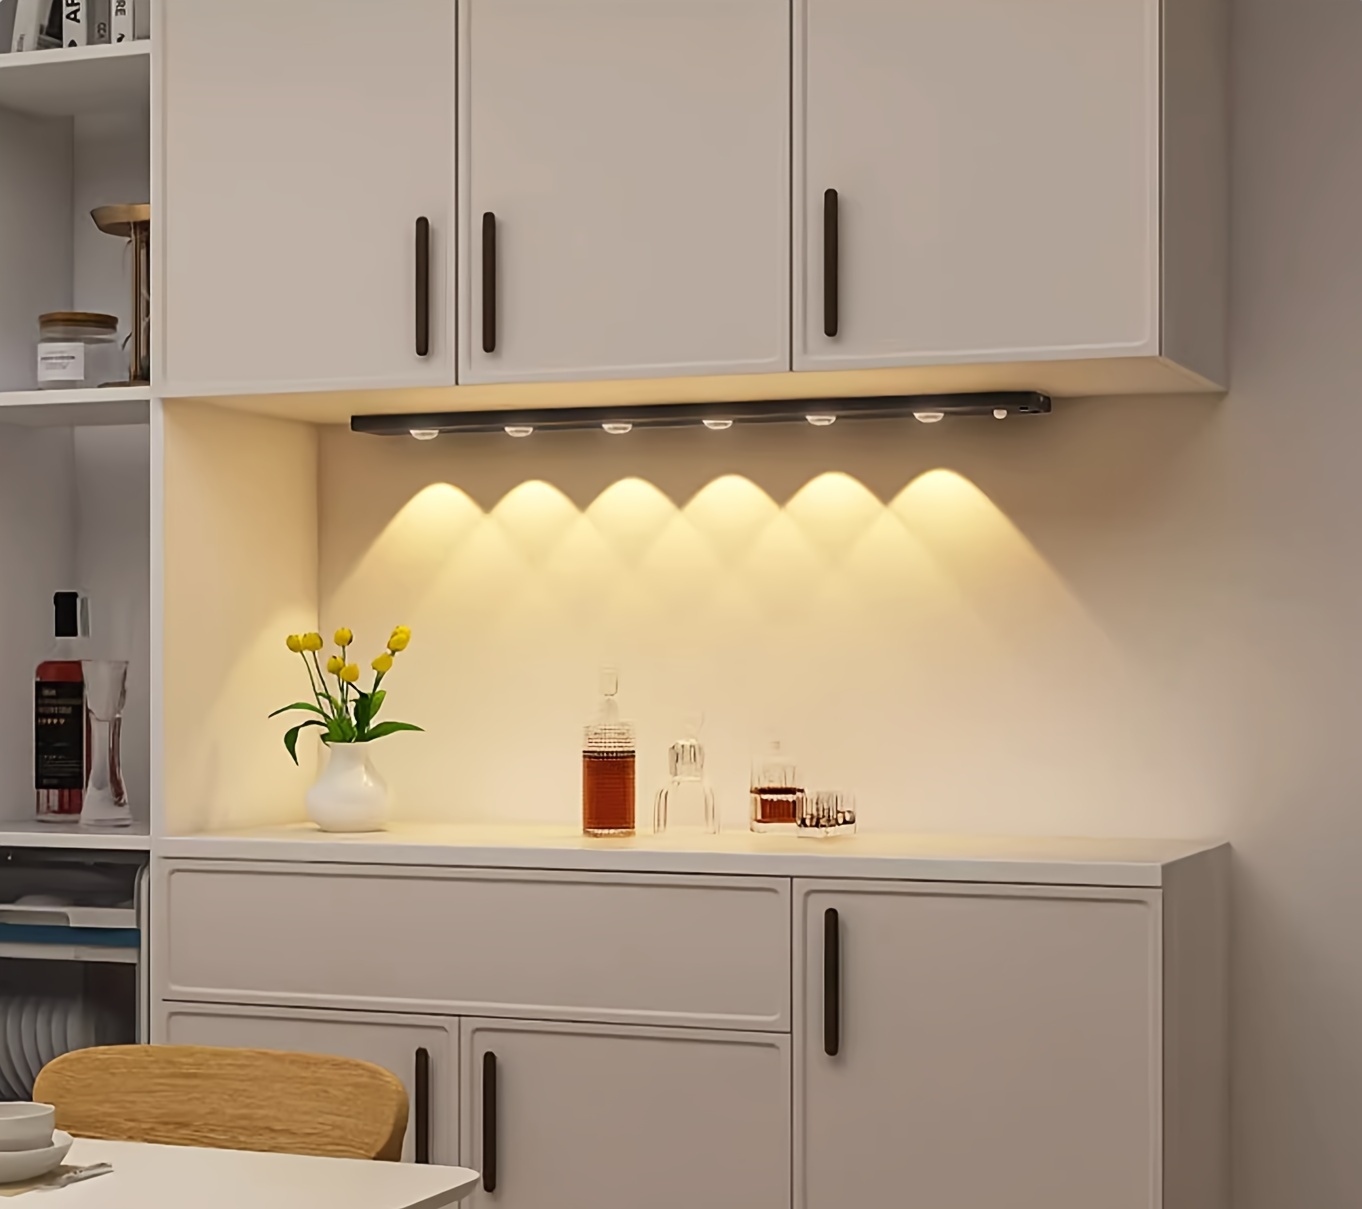 Luz LED Para Armario Con Sensor De Movimiento Lámpara De Noche Cocina  Dormitorio